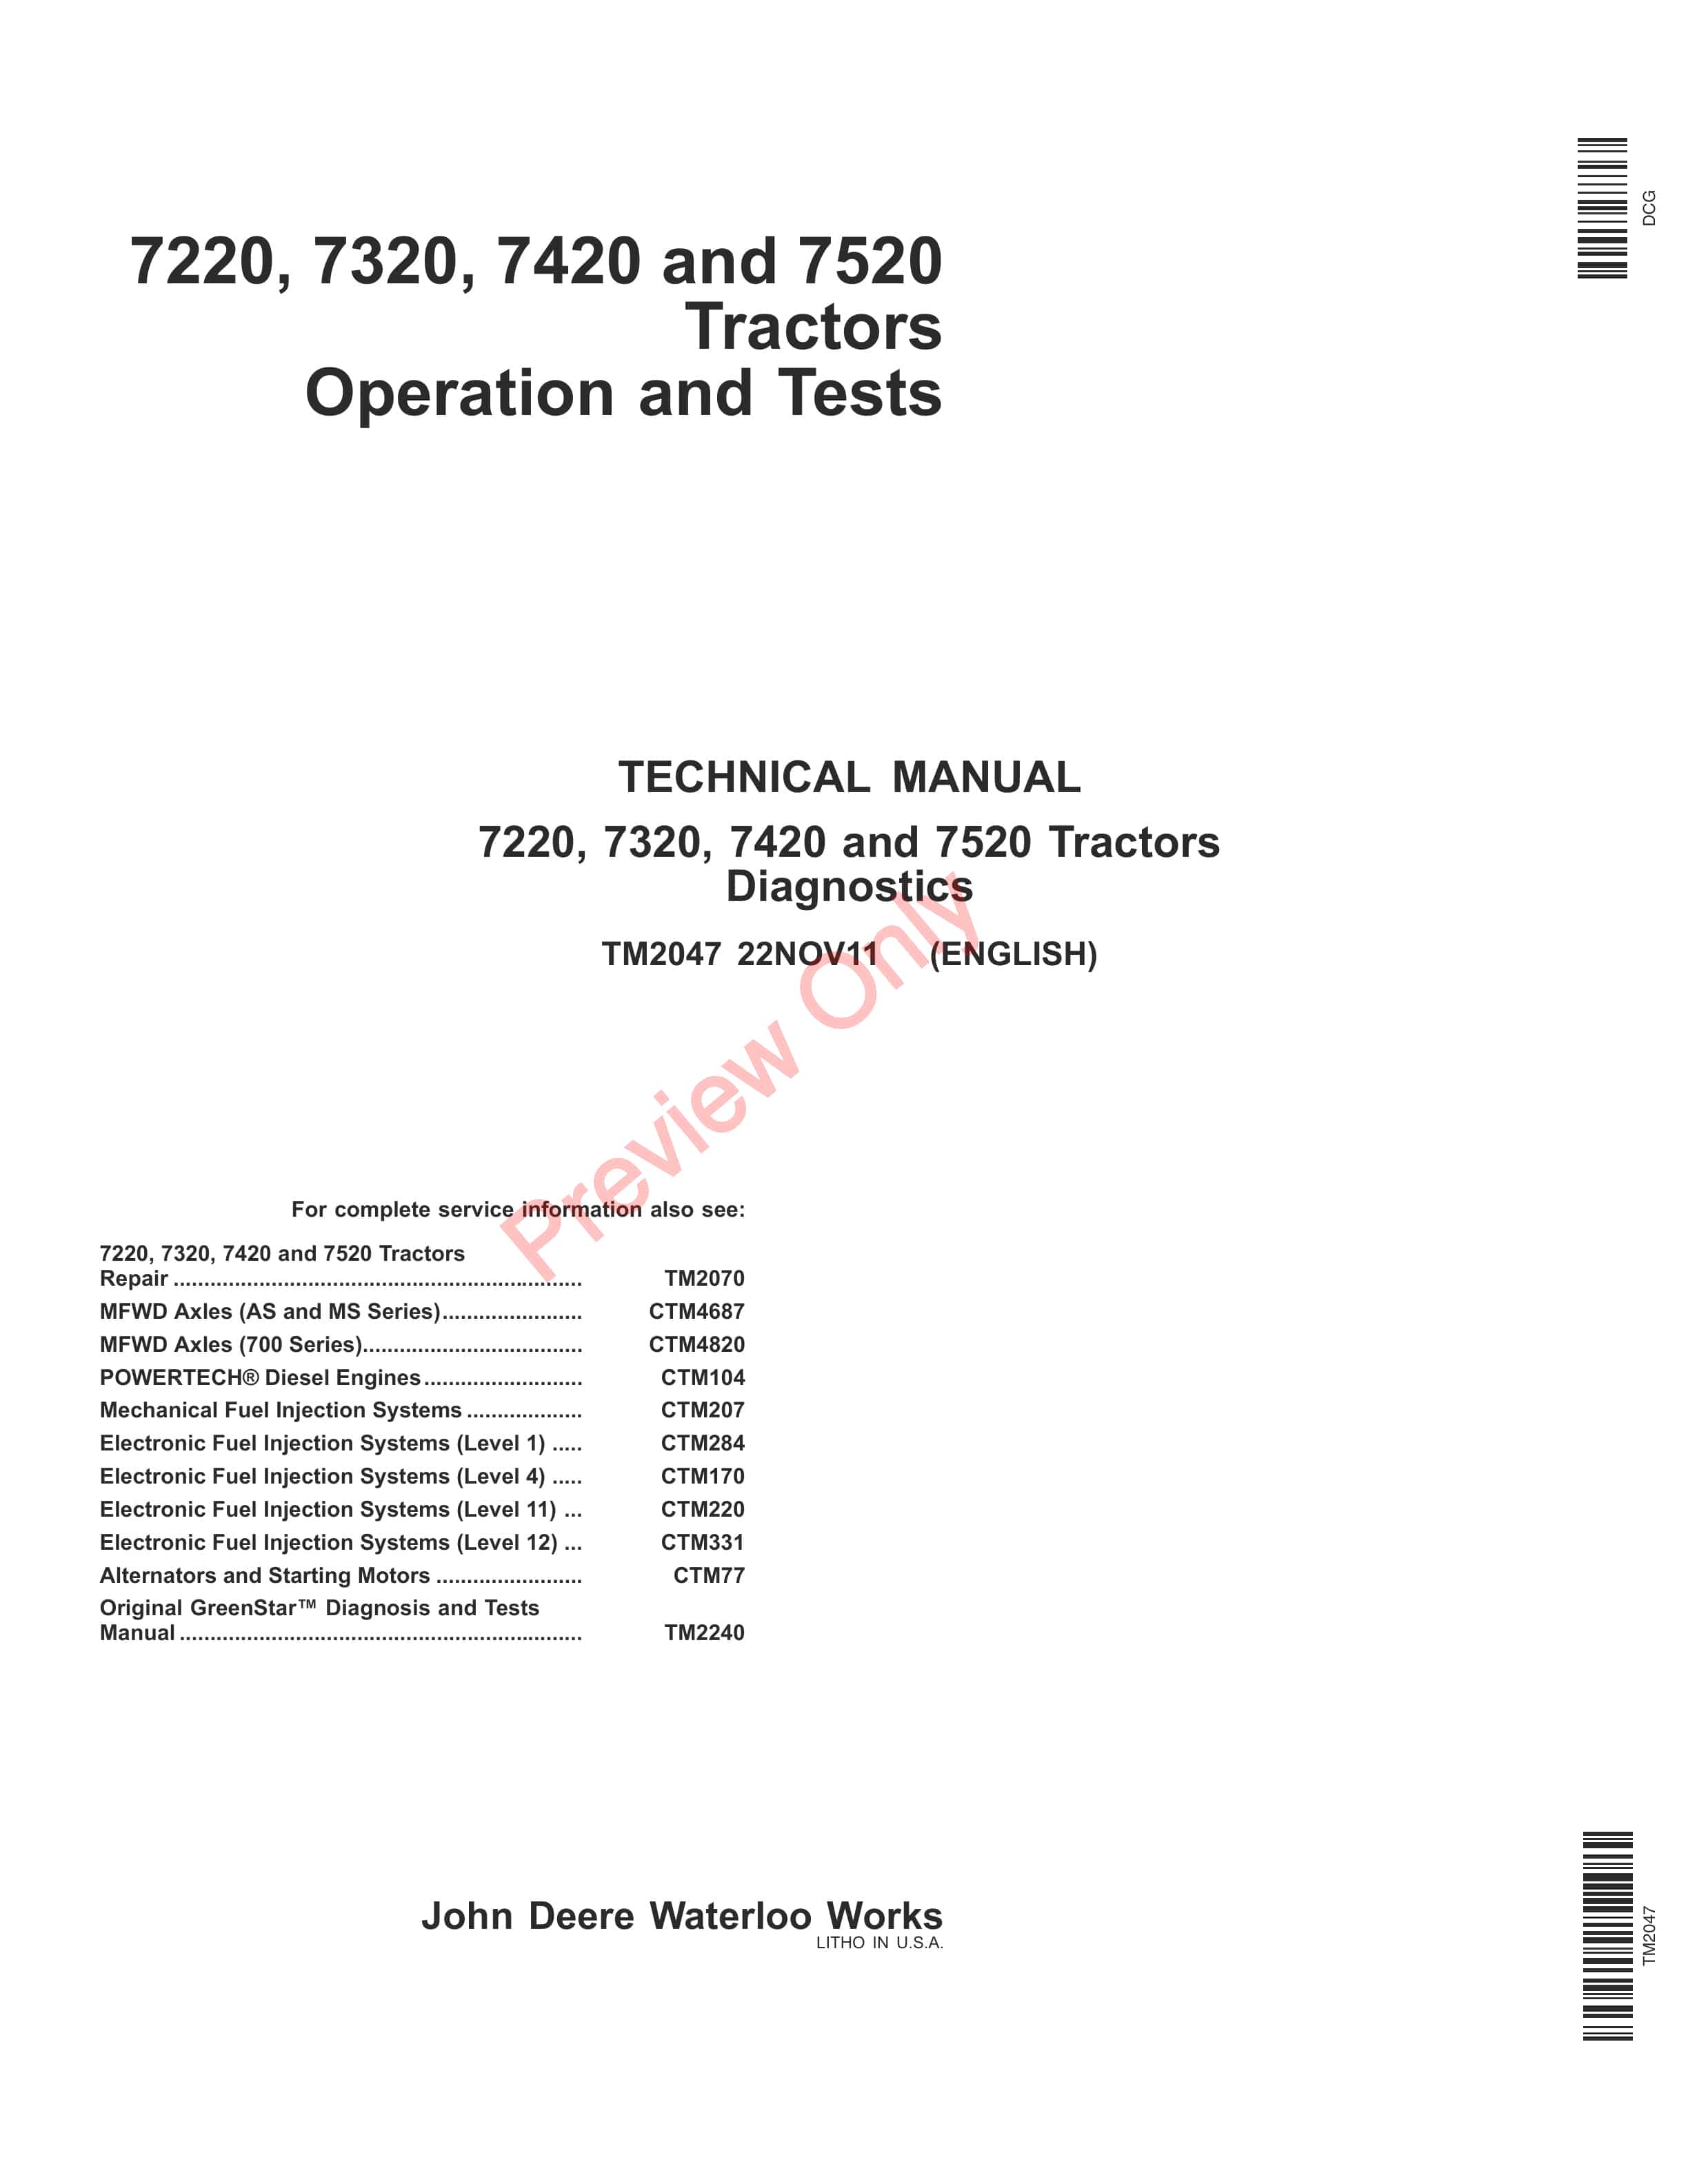 John Deere 7220 7320 7420 and 7520 Tractors Technical Manual TM2047 22NOV11 1